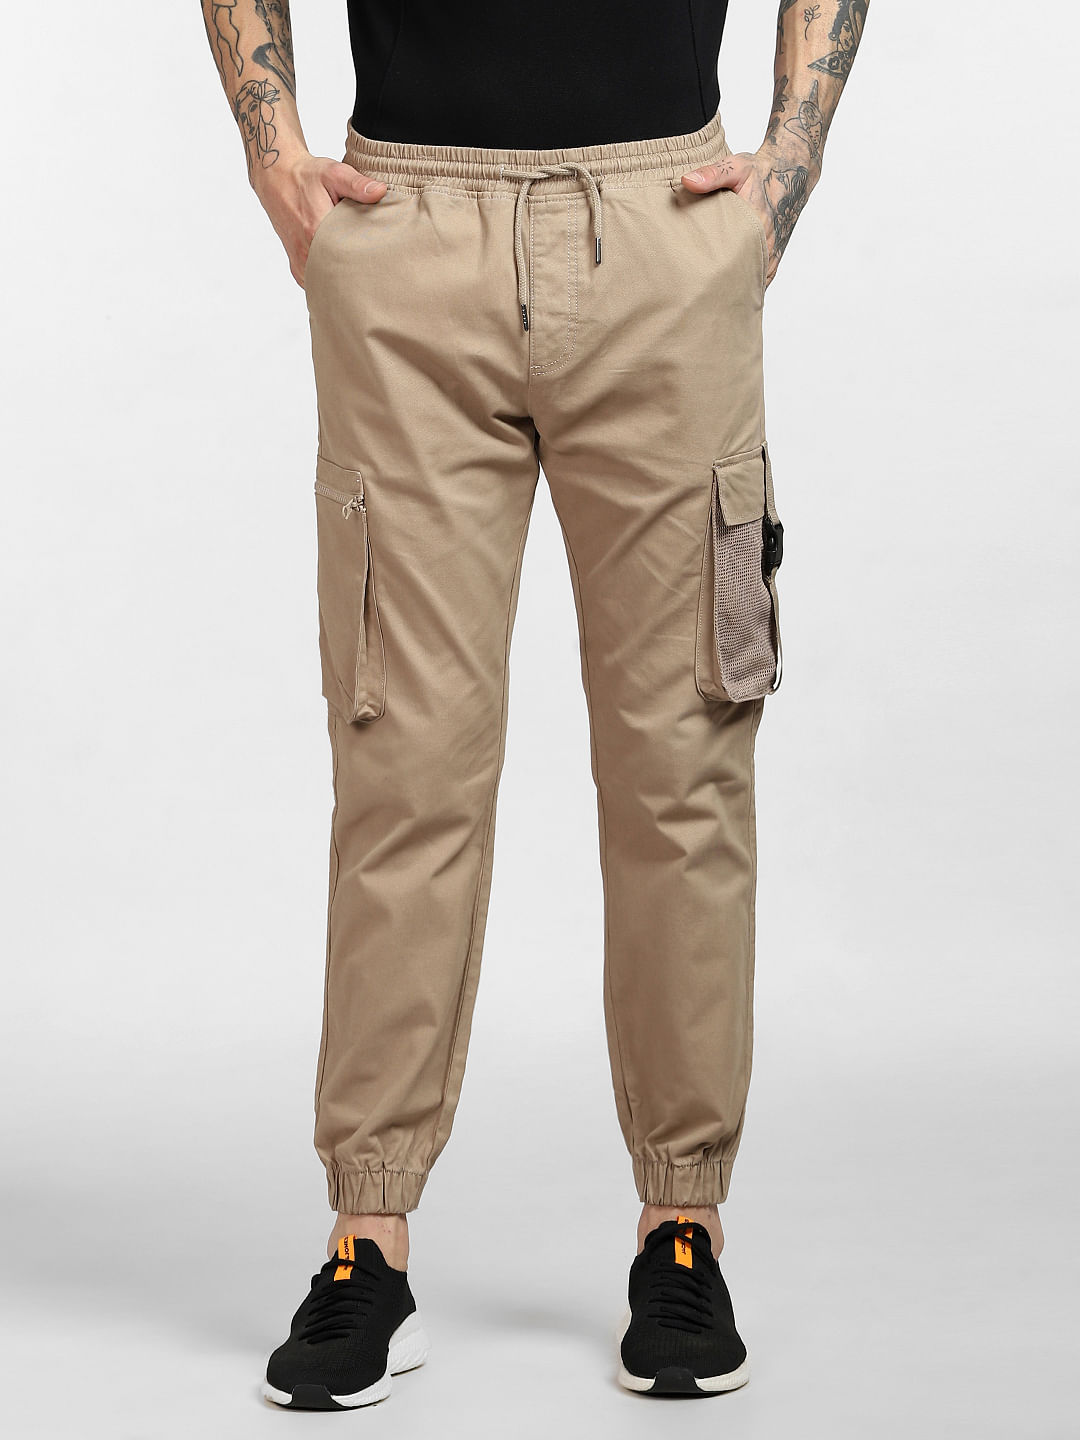 Buy Grey Trousers  Pants for Men by PAUL STREET Online  Ajiocom